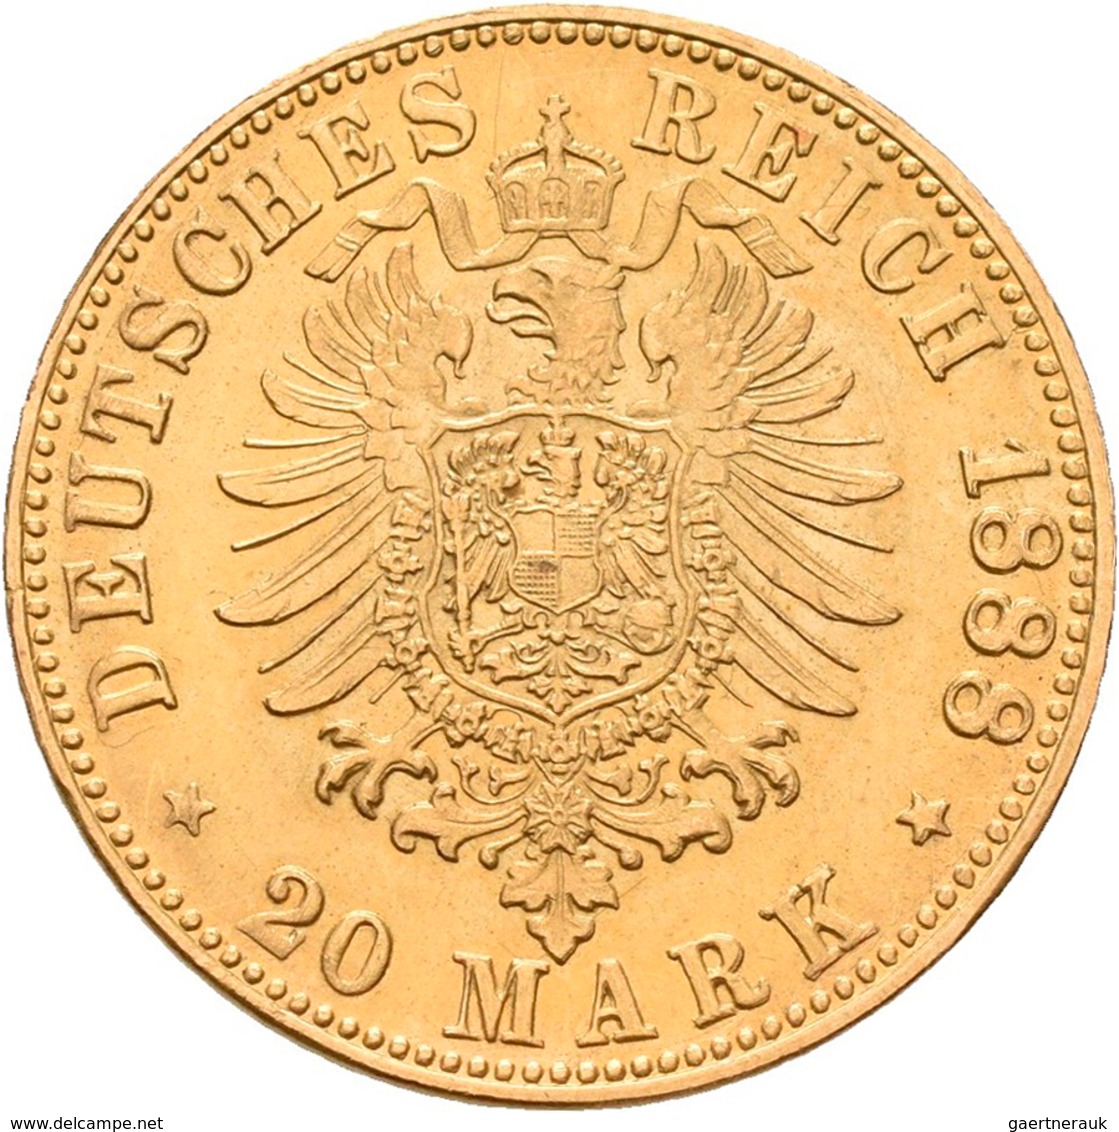 Medaillen: Lot 4 Stück: Medaille John F. Kennedy 3,08 g, gestempelt 999,9; 3 Goldmünzen / Belegstück